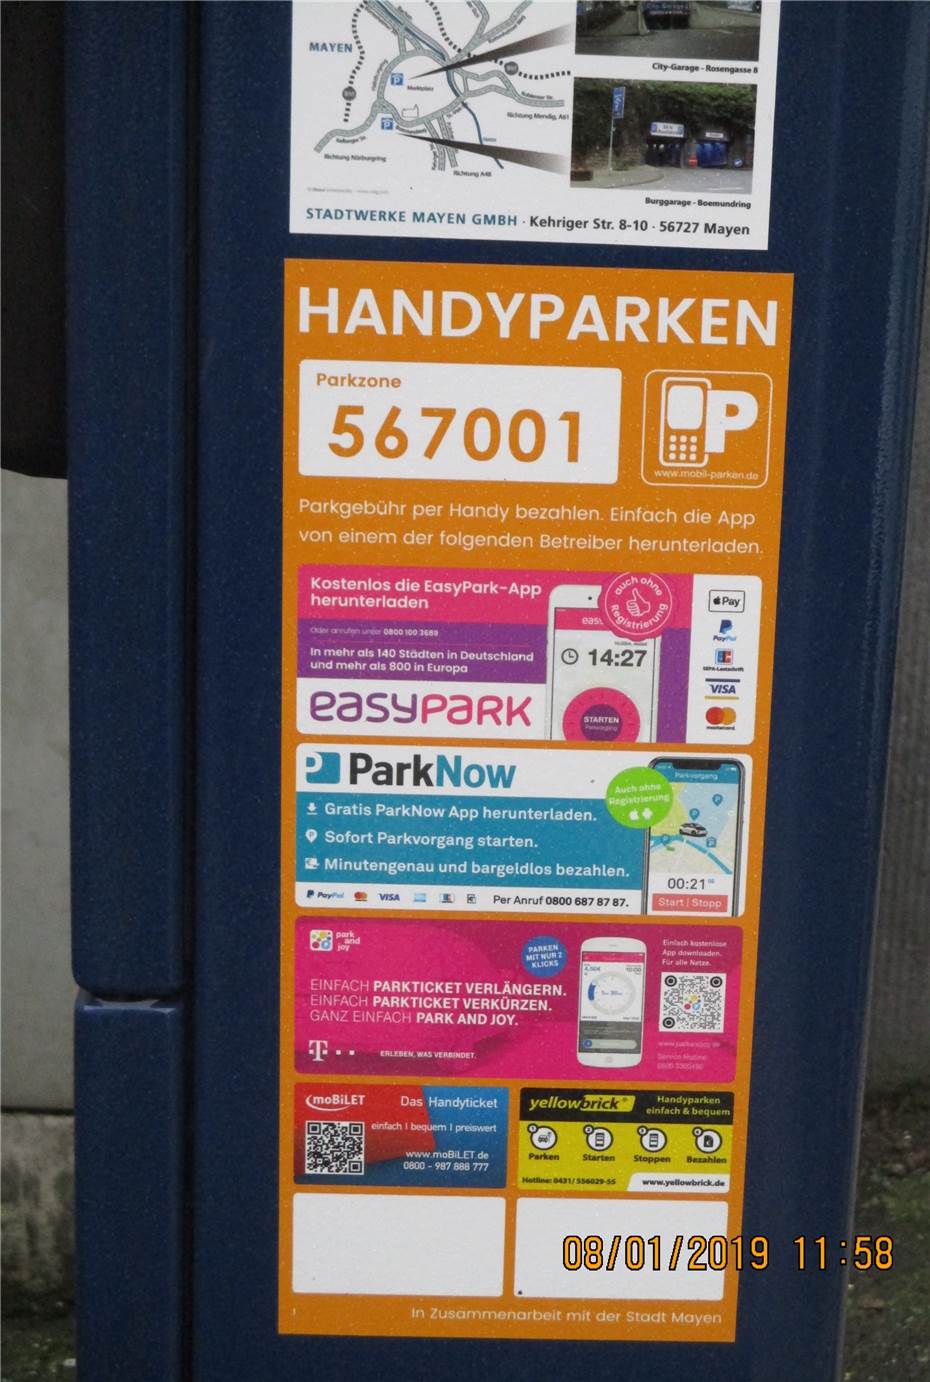 Handyparken: In Mayen können nun auch mittels Smartphone
die Parkgebühren gezahlt werden